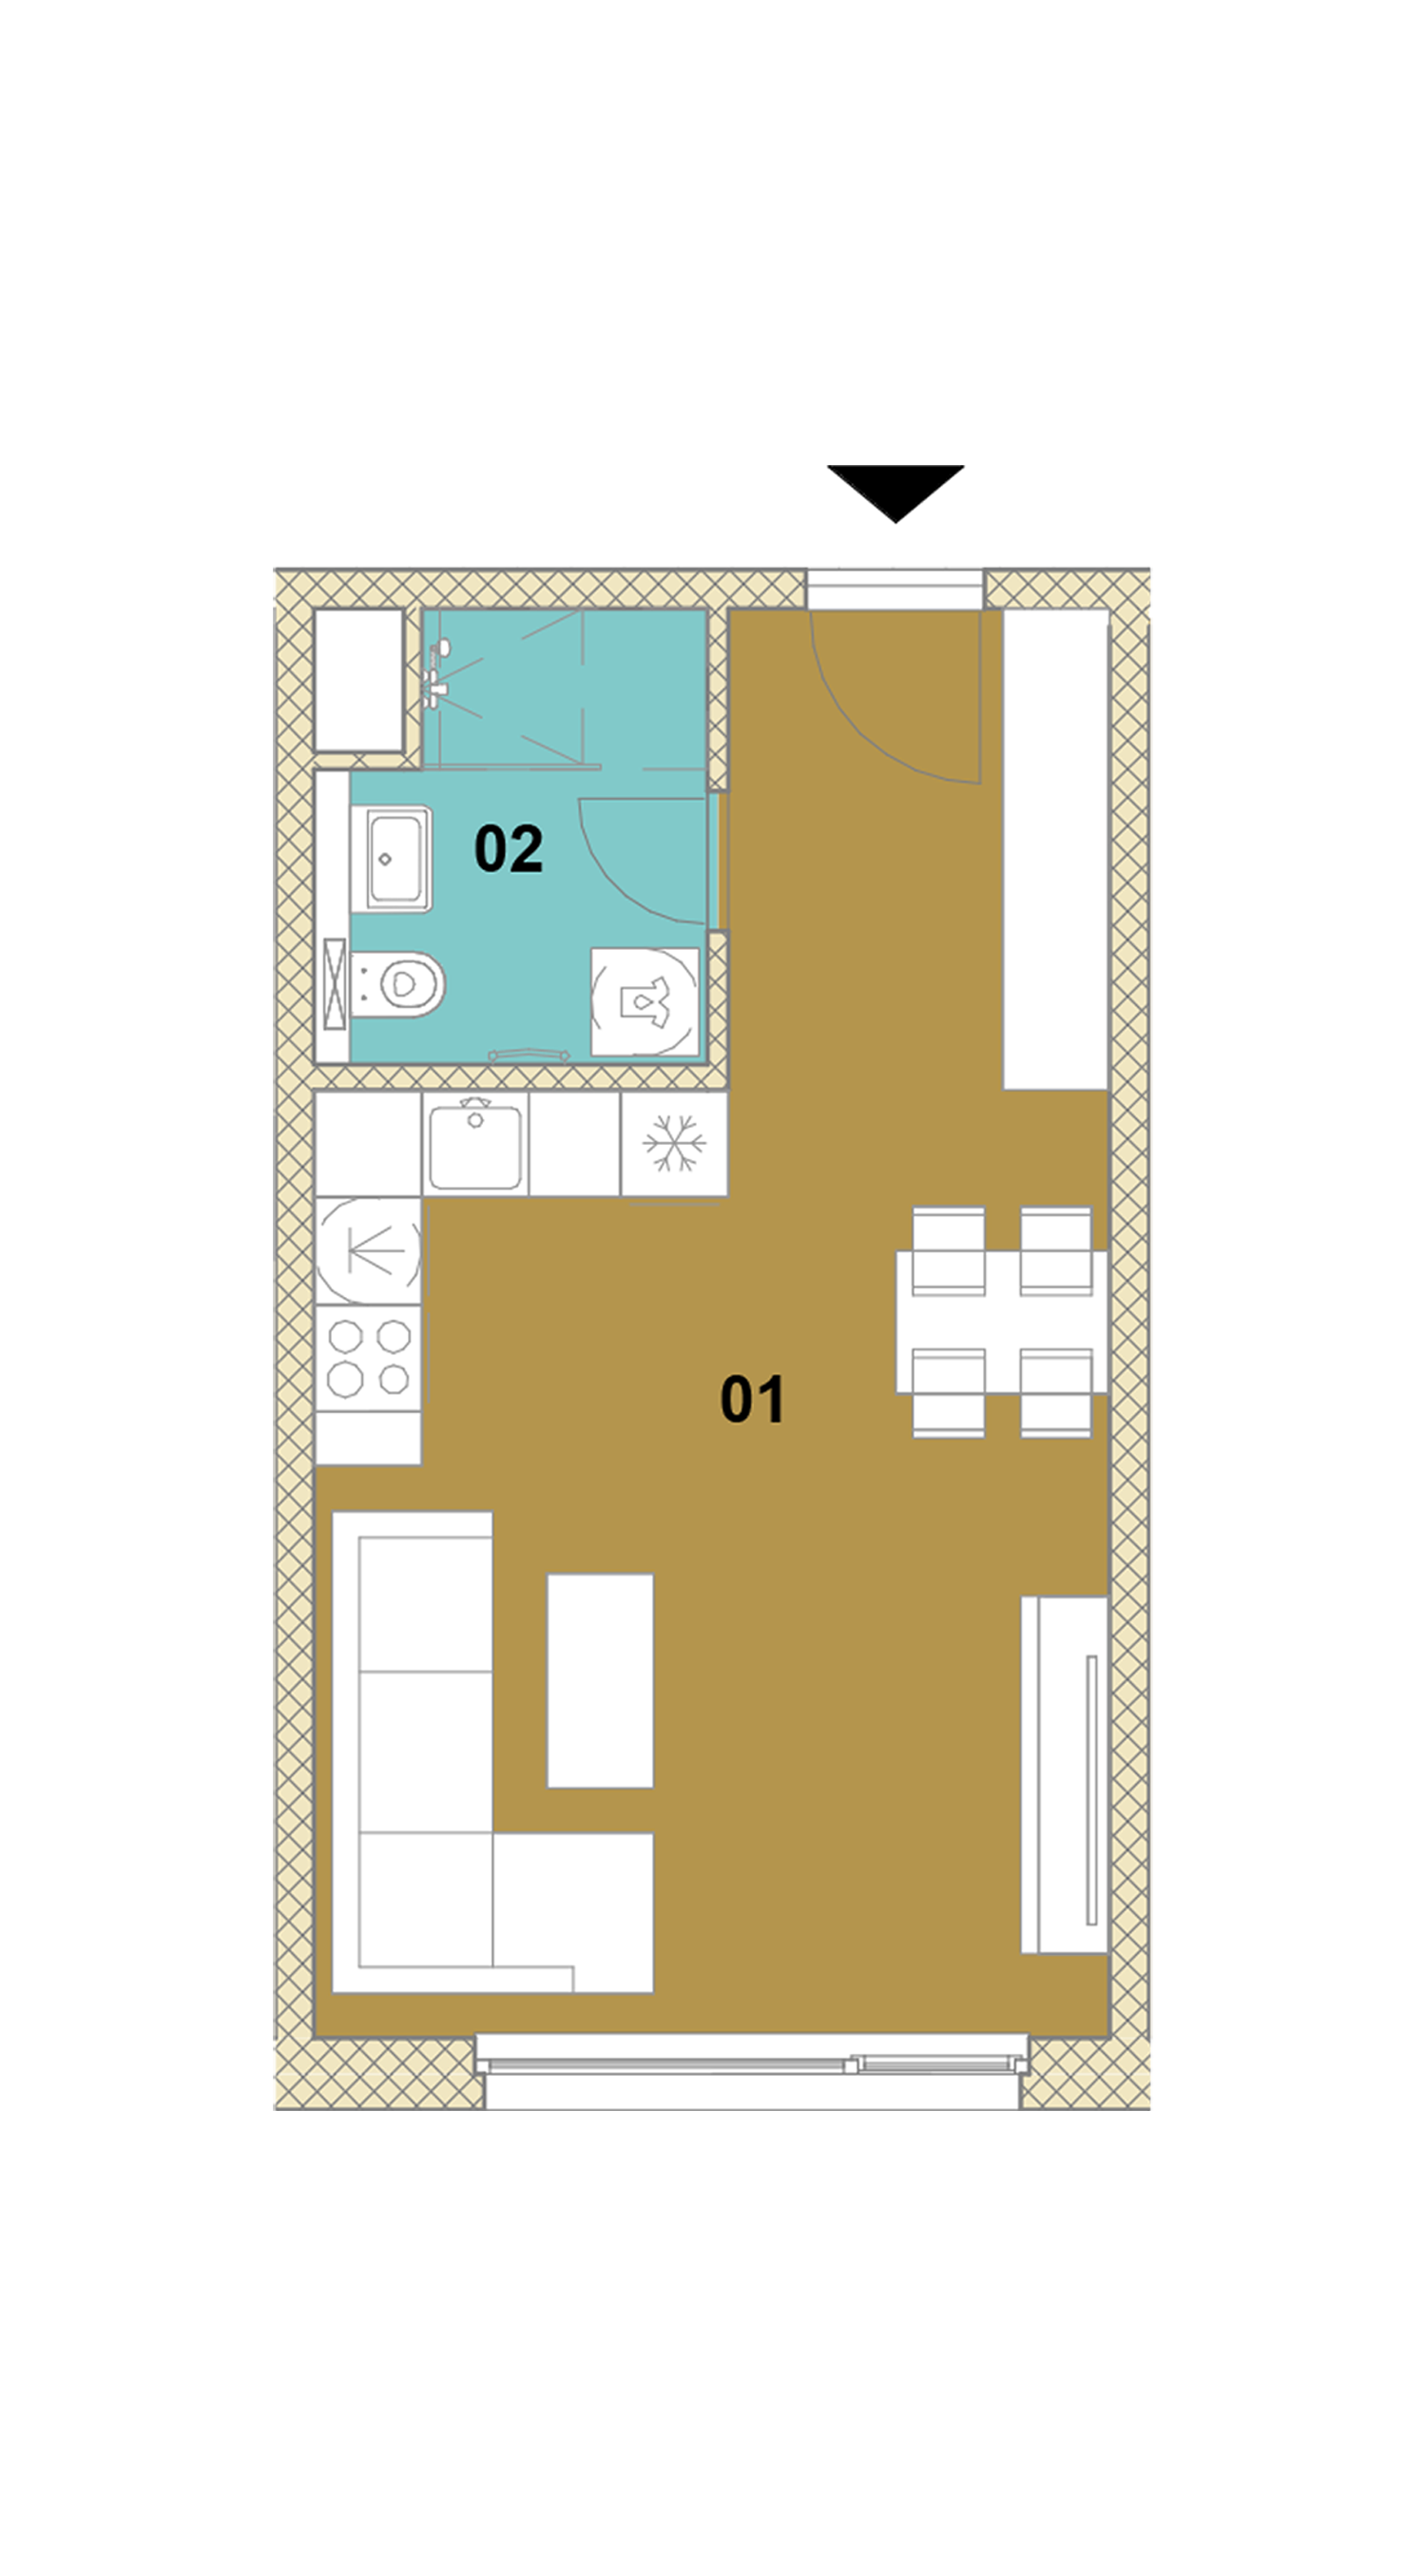 Jednoizbový byt E1-403